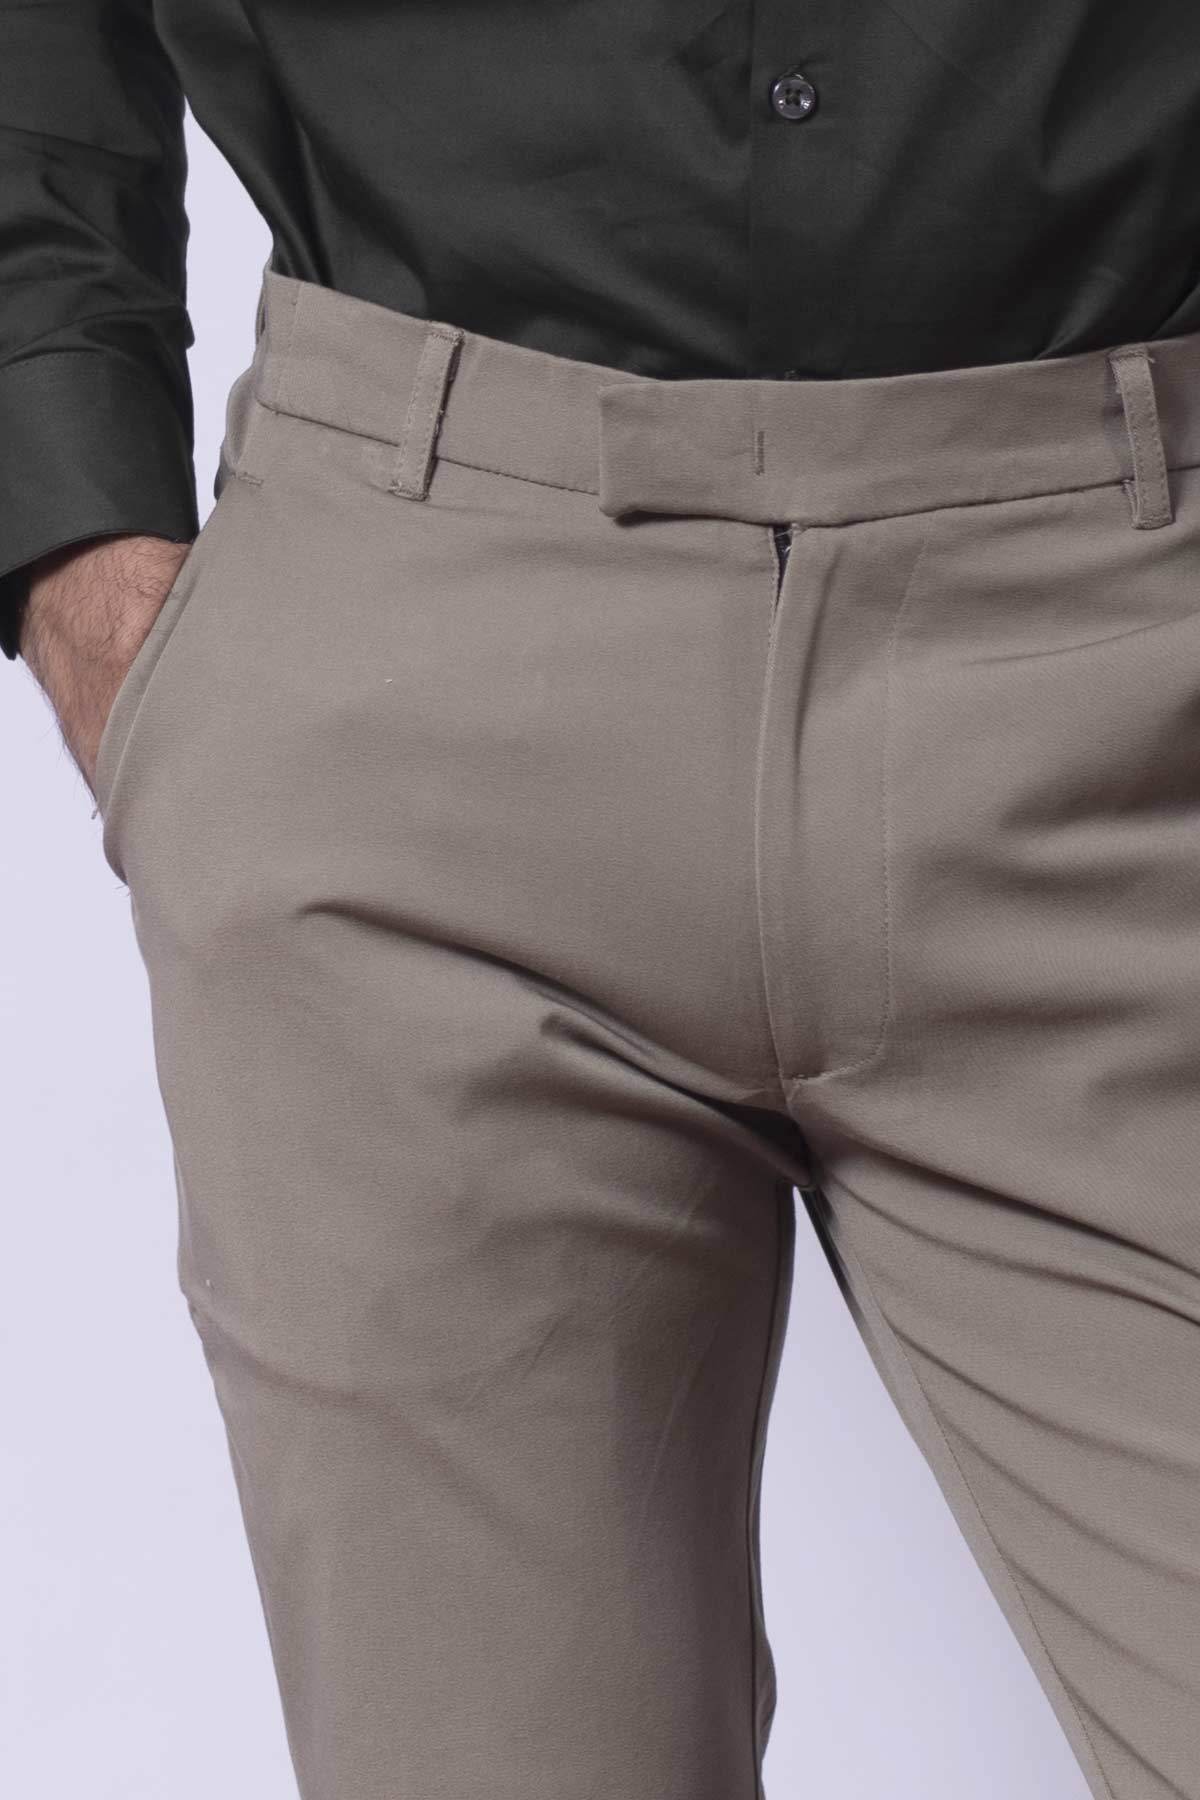 The 24 Dark Beige Trouser